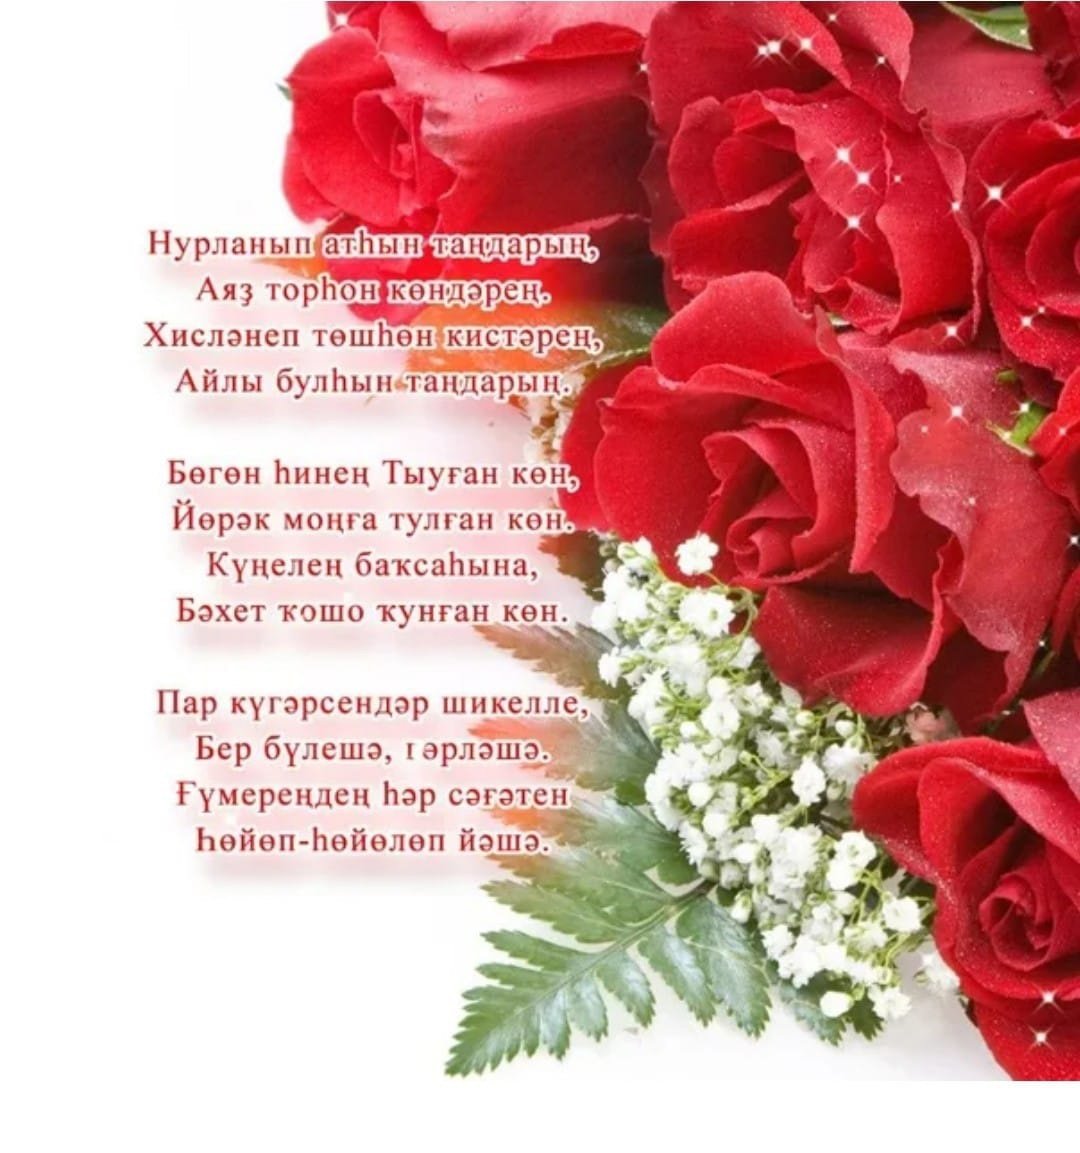 Поздравление на башкирском языке маме. Поздравление с юбилеем на башкирском языке. Открытки с юбилеем женщине на башкирском языке. Башкирские поздравления с днем рождения женщине. Поздравляю с днём рождения на башкирском языке.